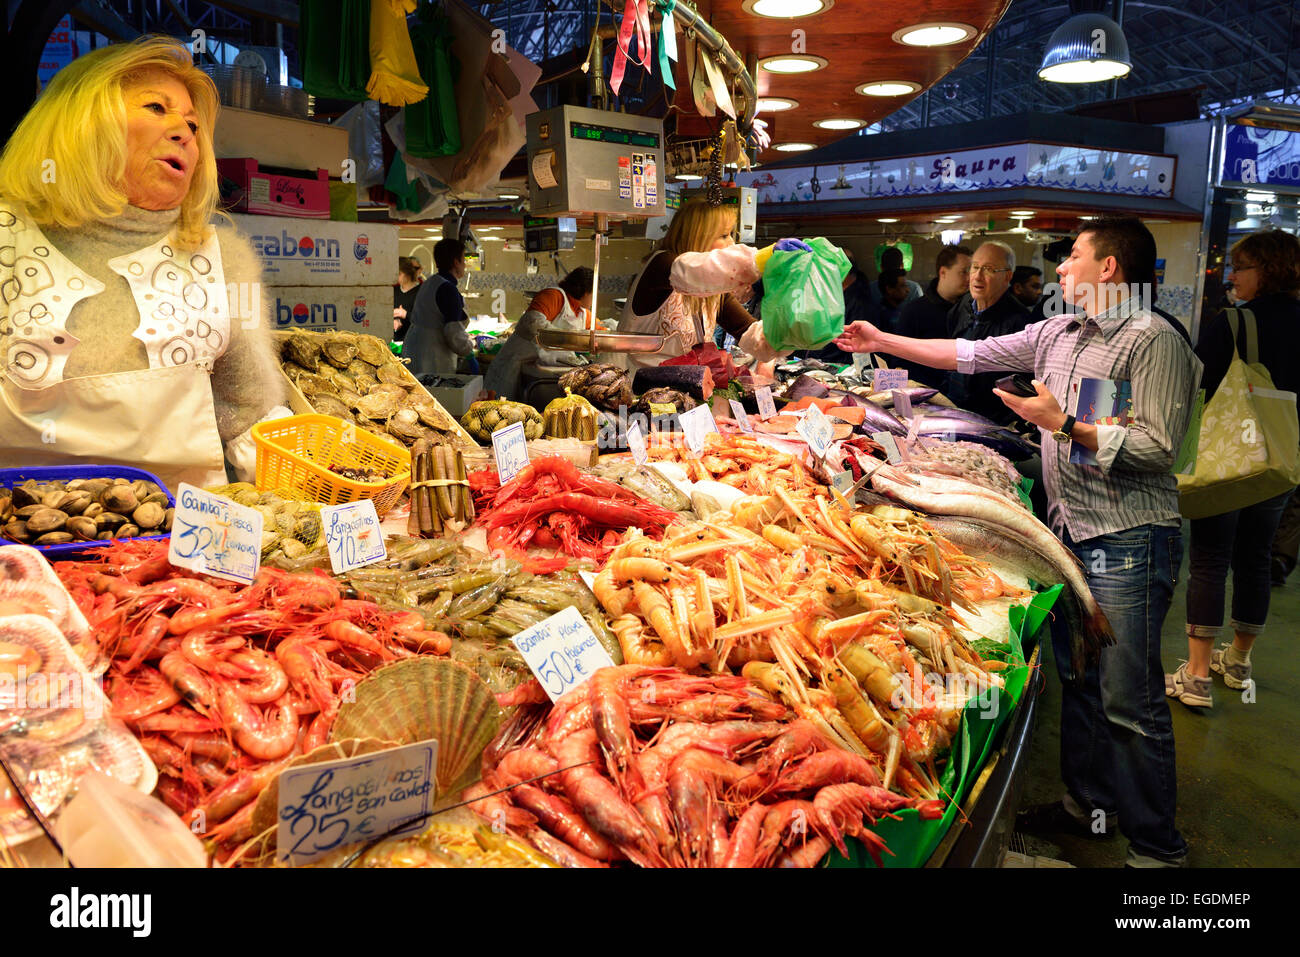 Fish stall in market Boqueria, La Boqueria, La Rambla, Barcelona, Catalonia, Spain Stock Photo